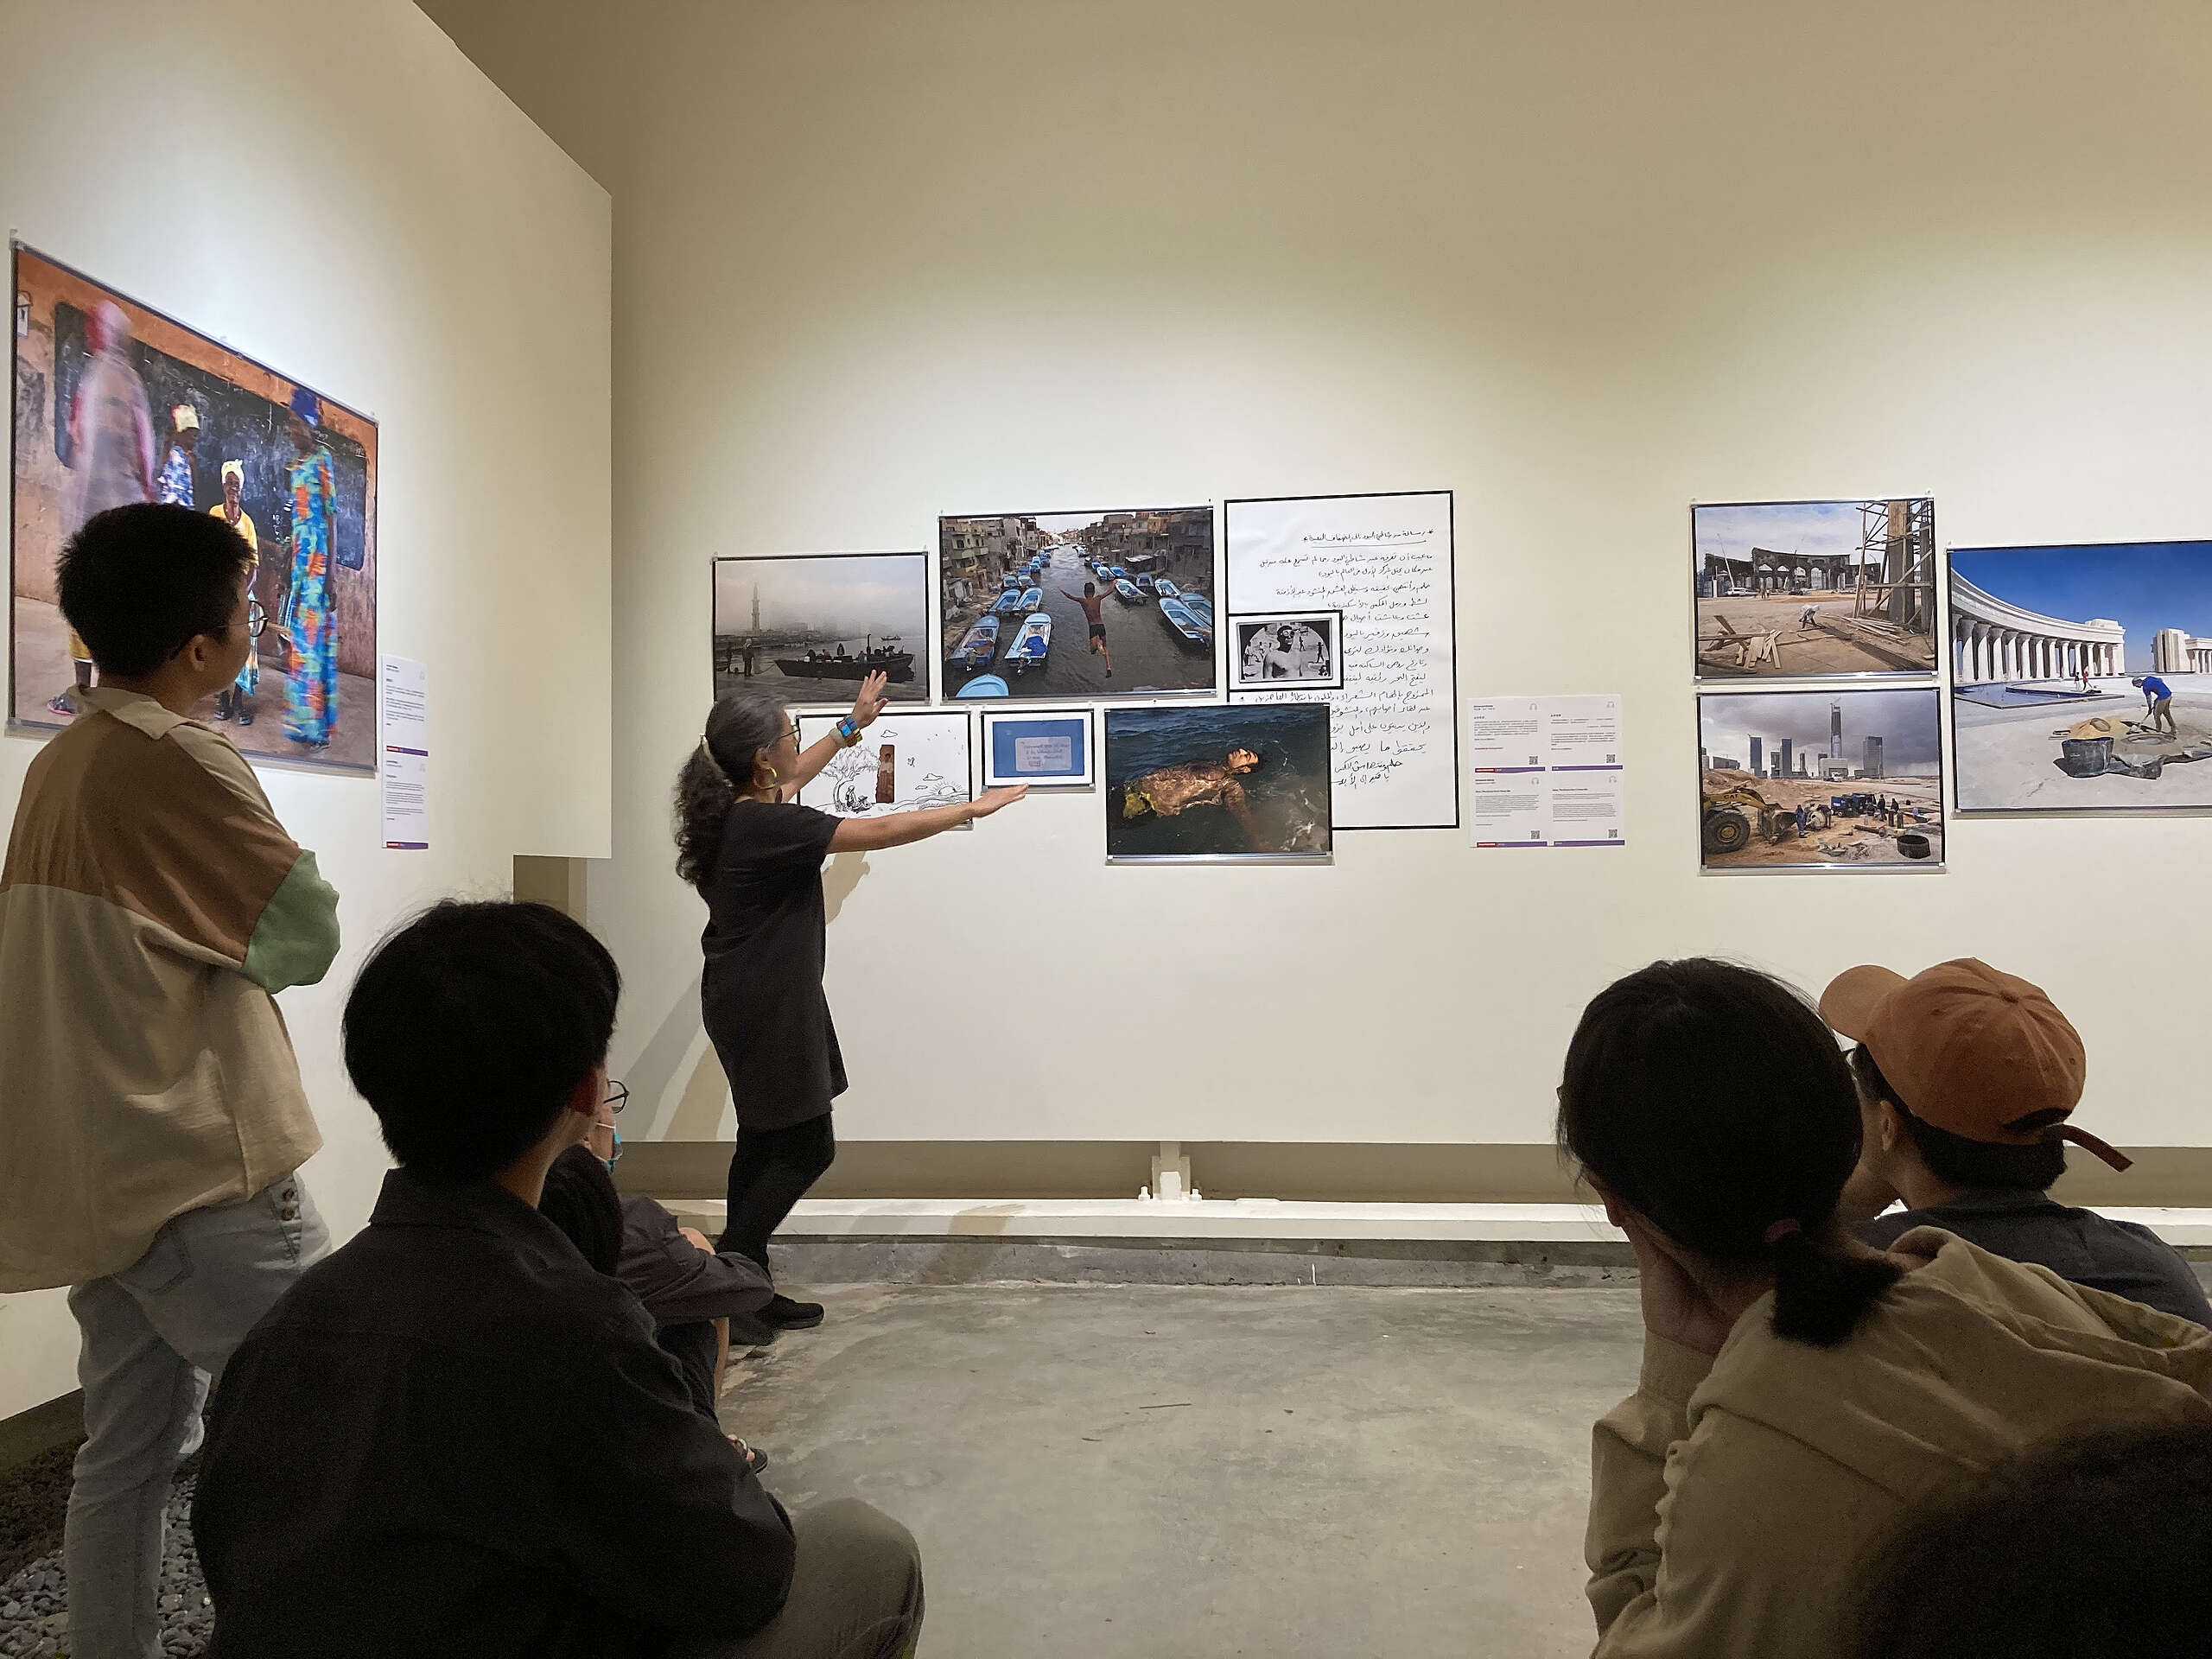 臺灣玉溪有容教育基金會，每年將世界新聞攝影展帶至臺灣觀眾面前，讓我們跨域了解更多元的社會議題，並觀看及反思自己與世界的關係。